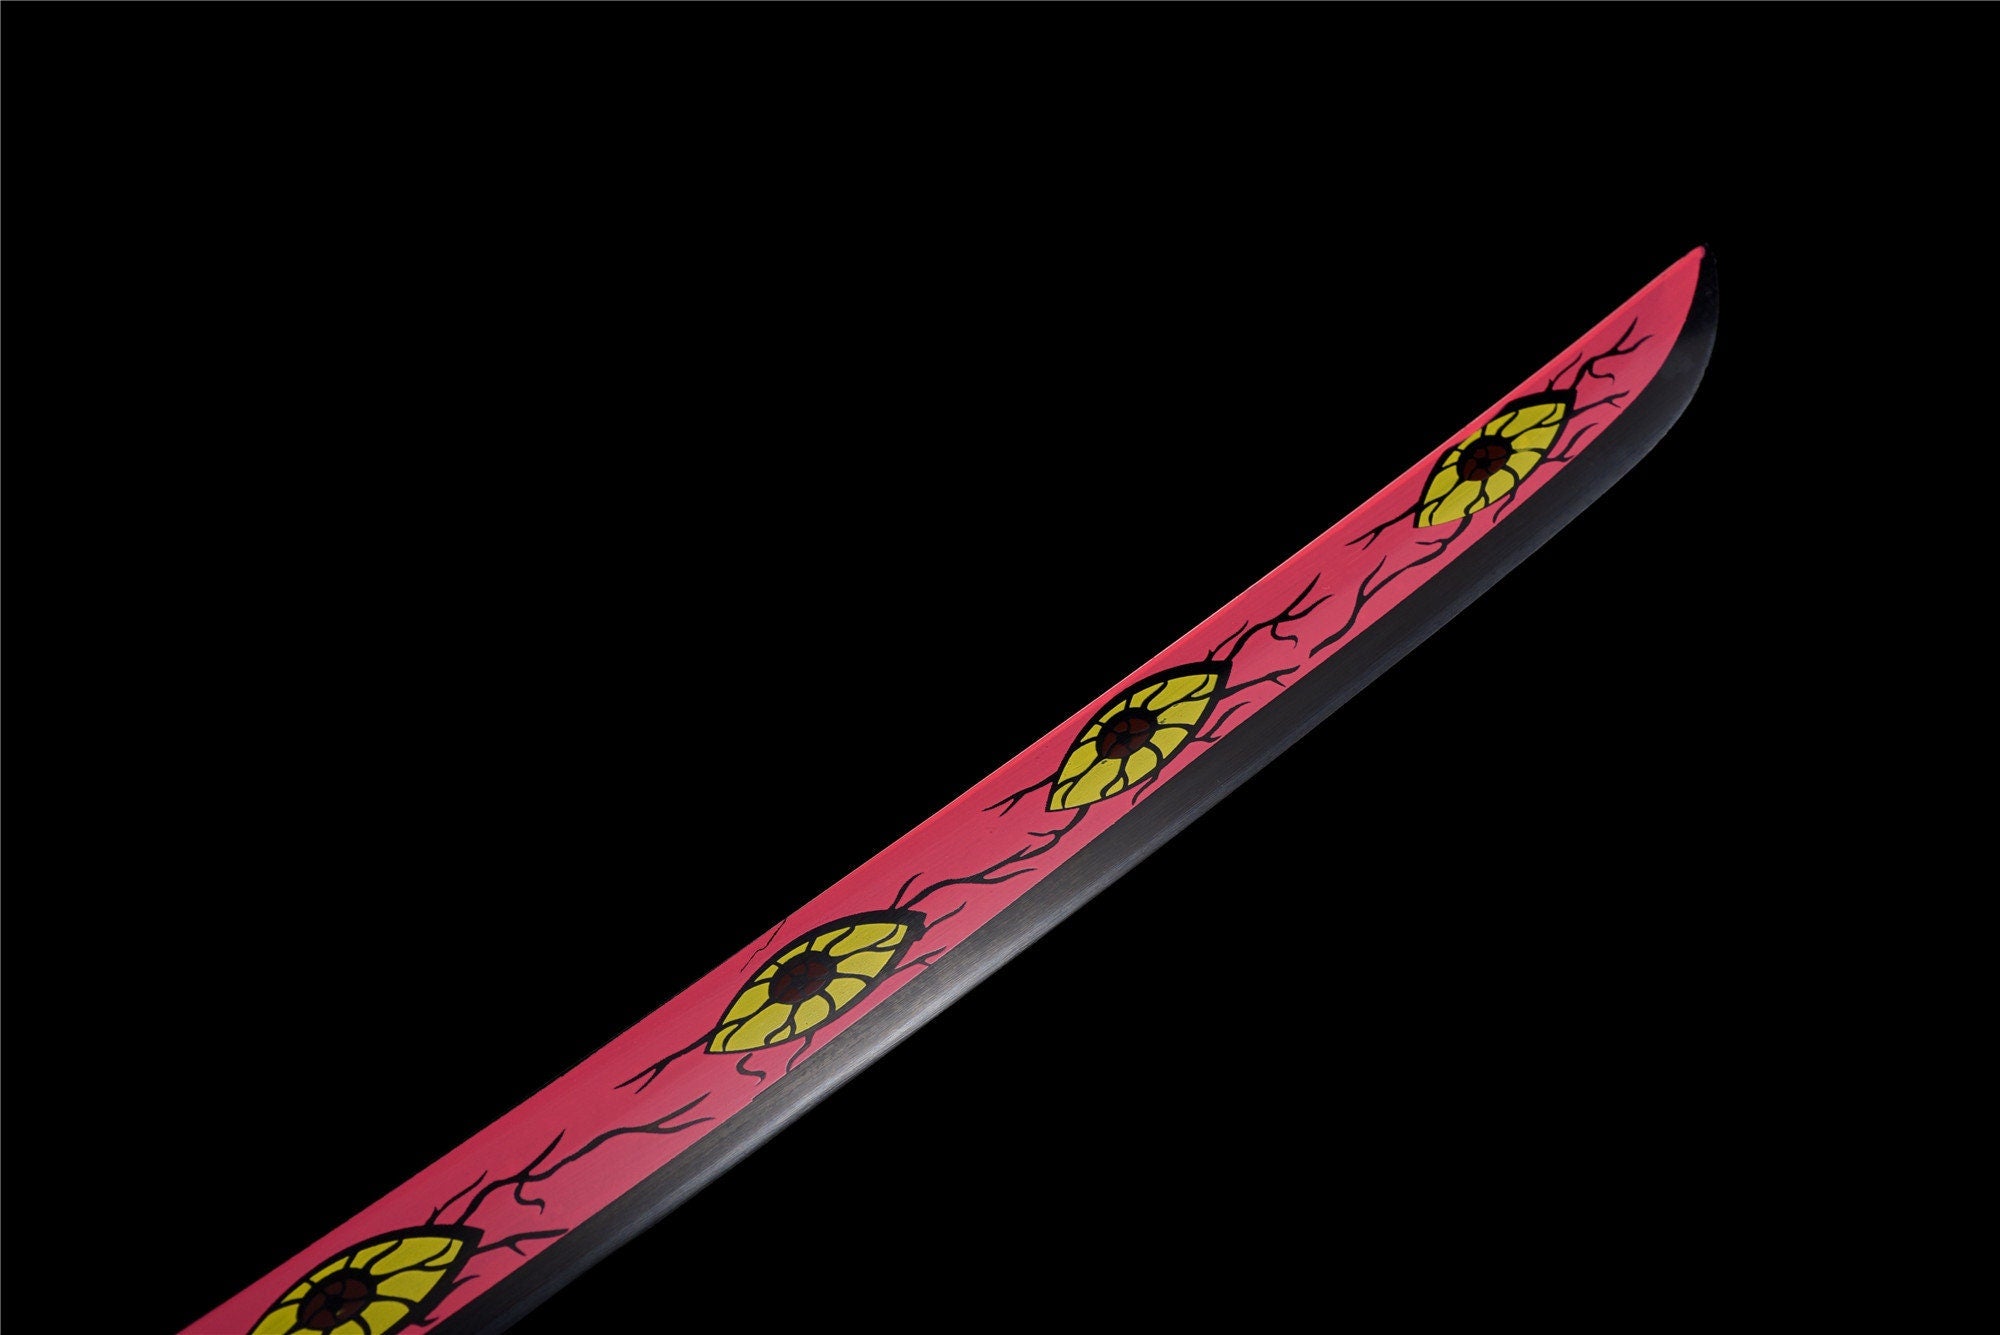 Pink Anime Sword,Anime Cosplay,Real Japanese Samurai Sword,Handmade Anime Katana,High-carbon steel,Full Tang